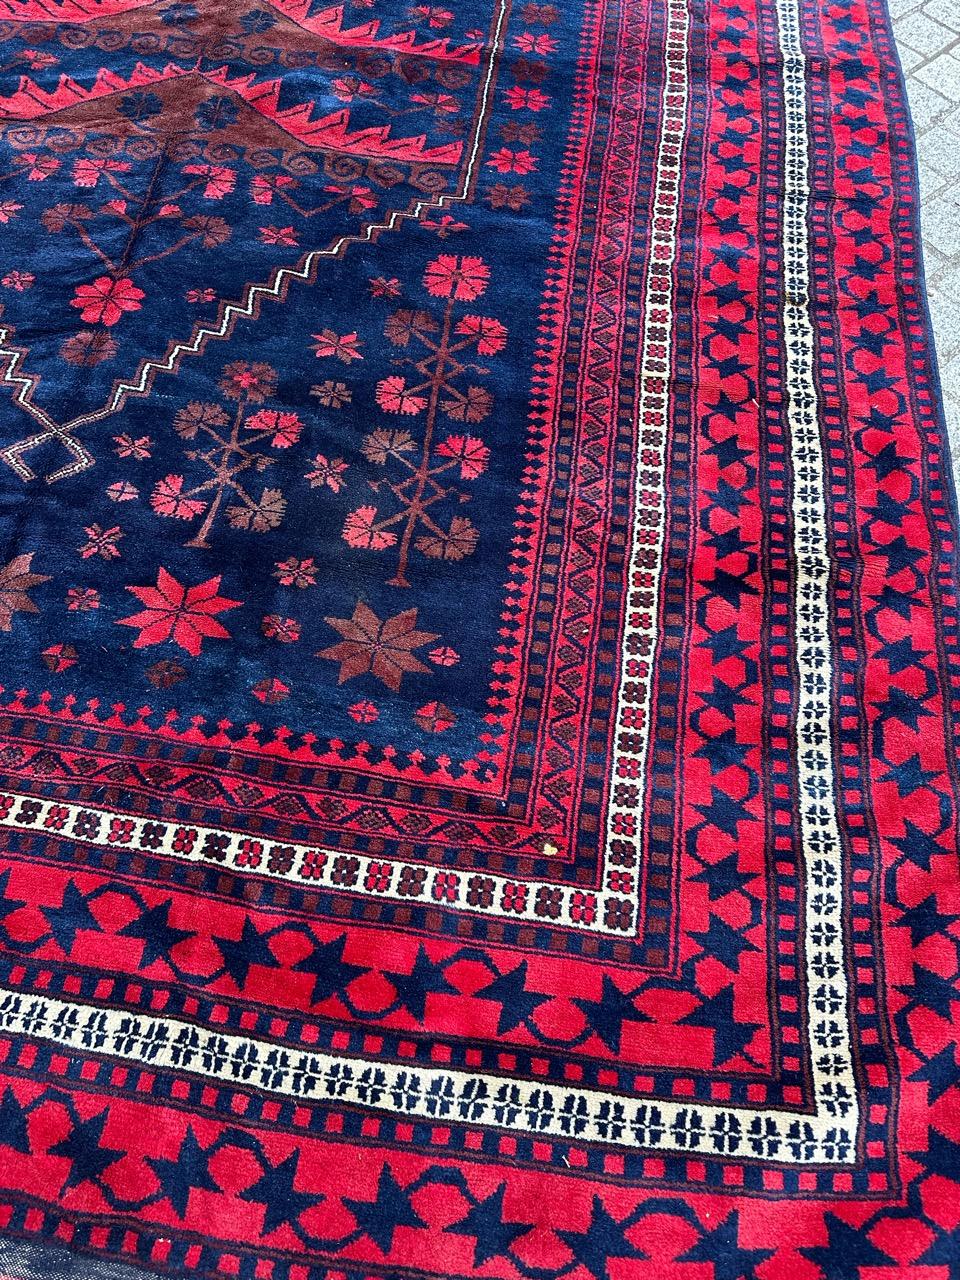 Hand-Knotted Bobyrug’s nice large vintage Turkish rug For Sale